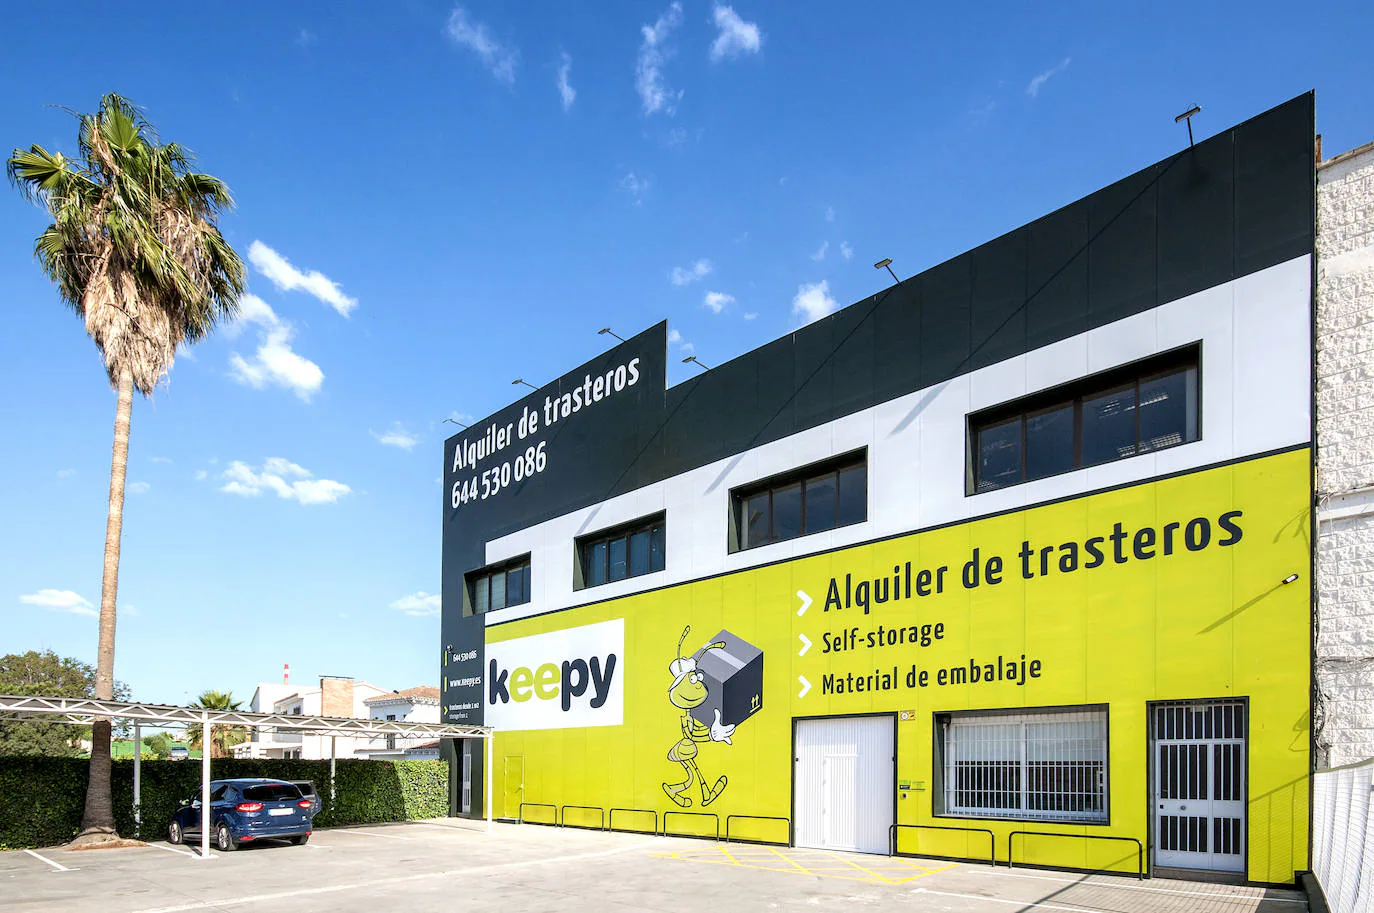 Alquiler de trasteros Keepy Málaga - Abrimos un nuevo centr junto al polígono La Huertecilla 